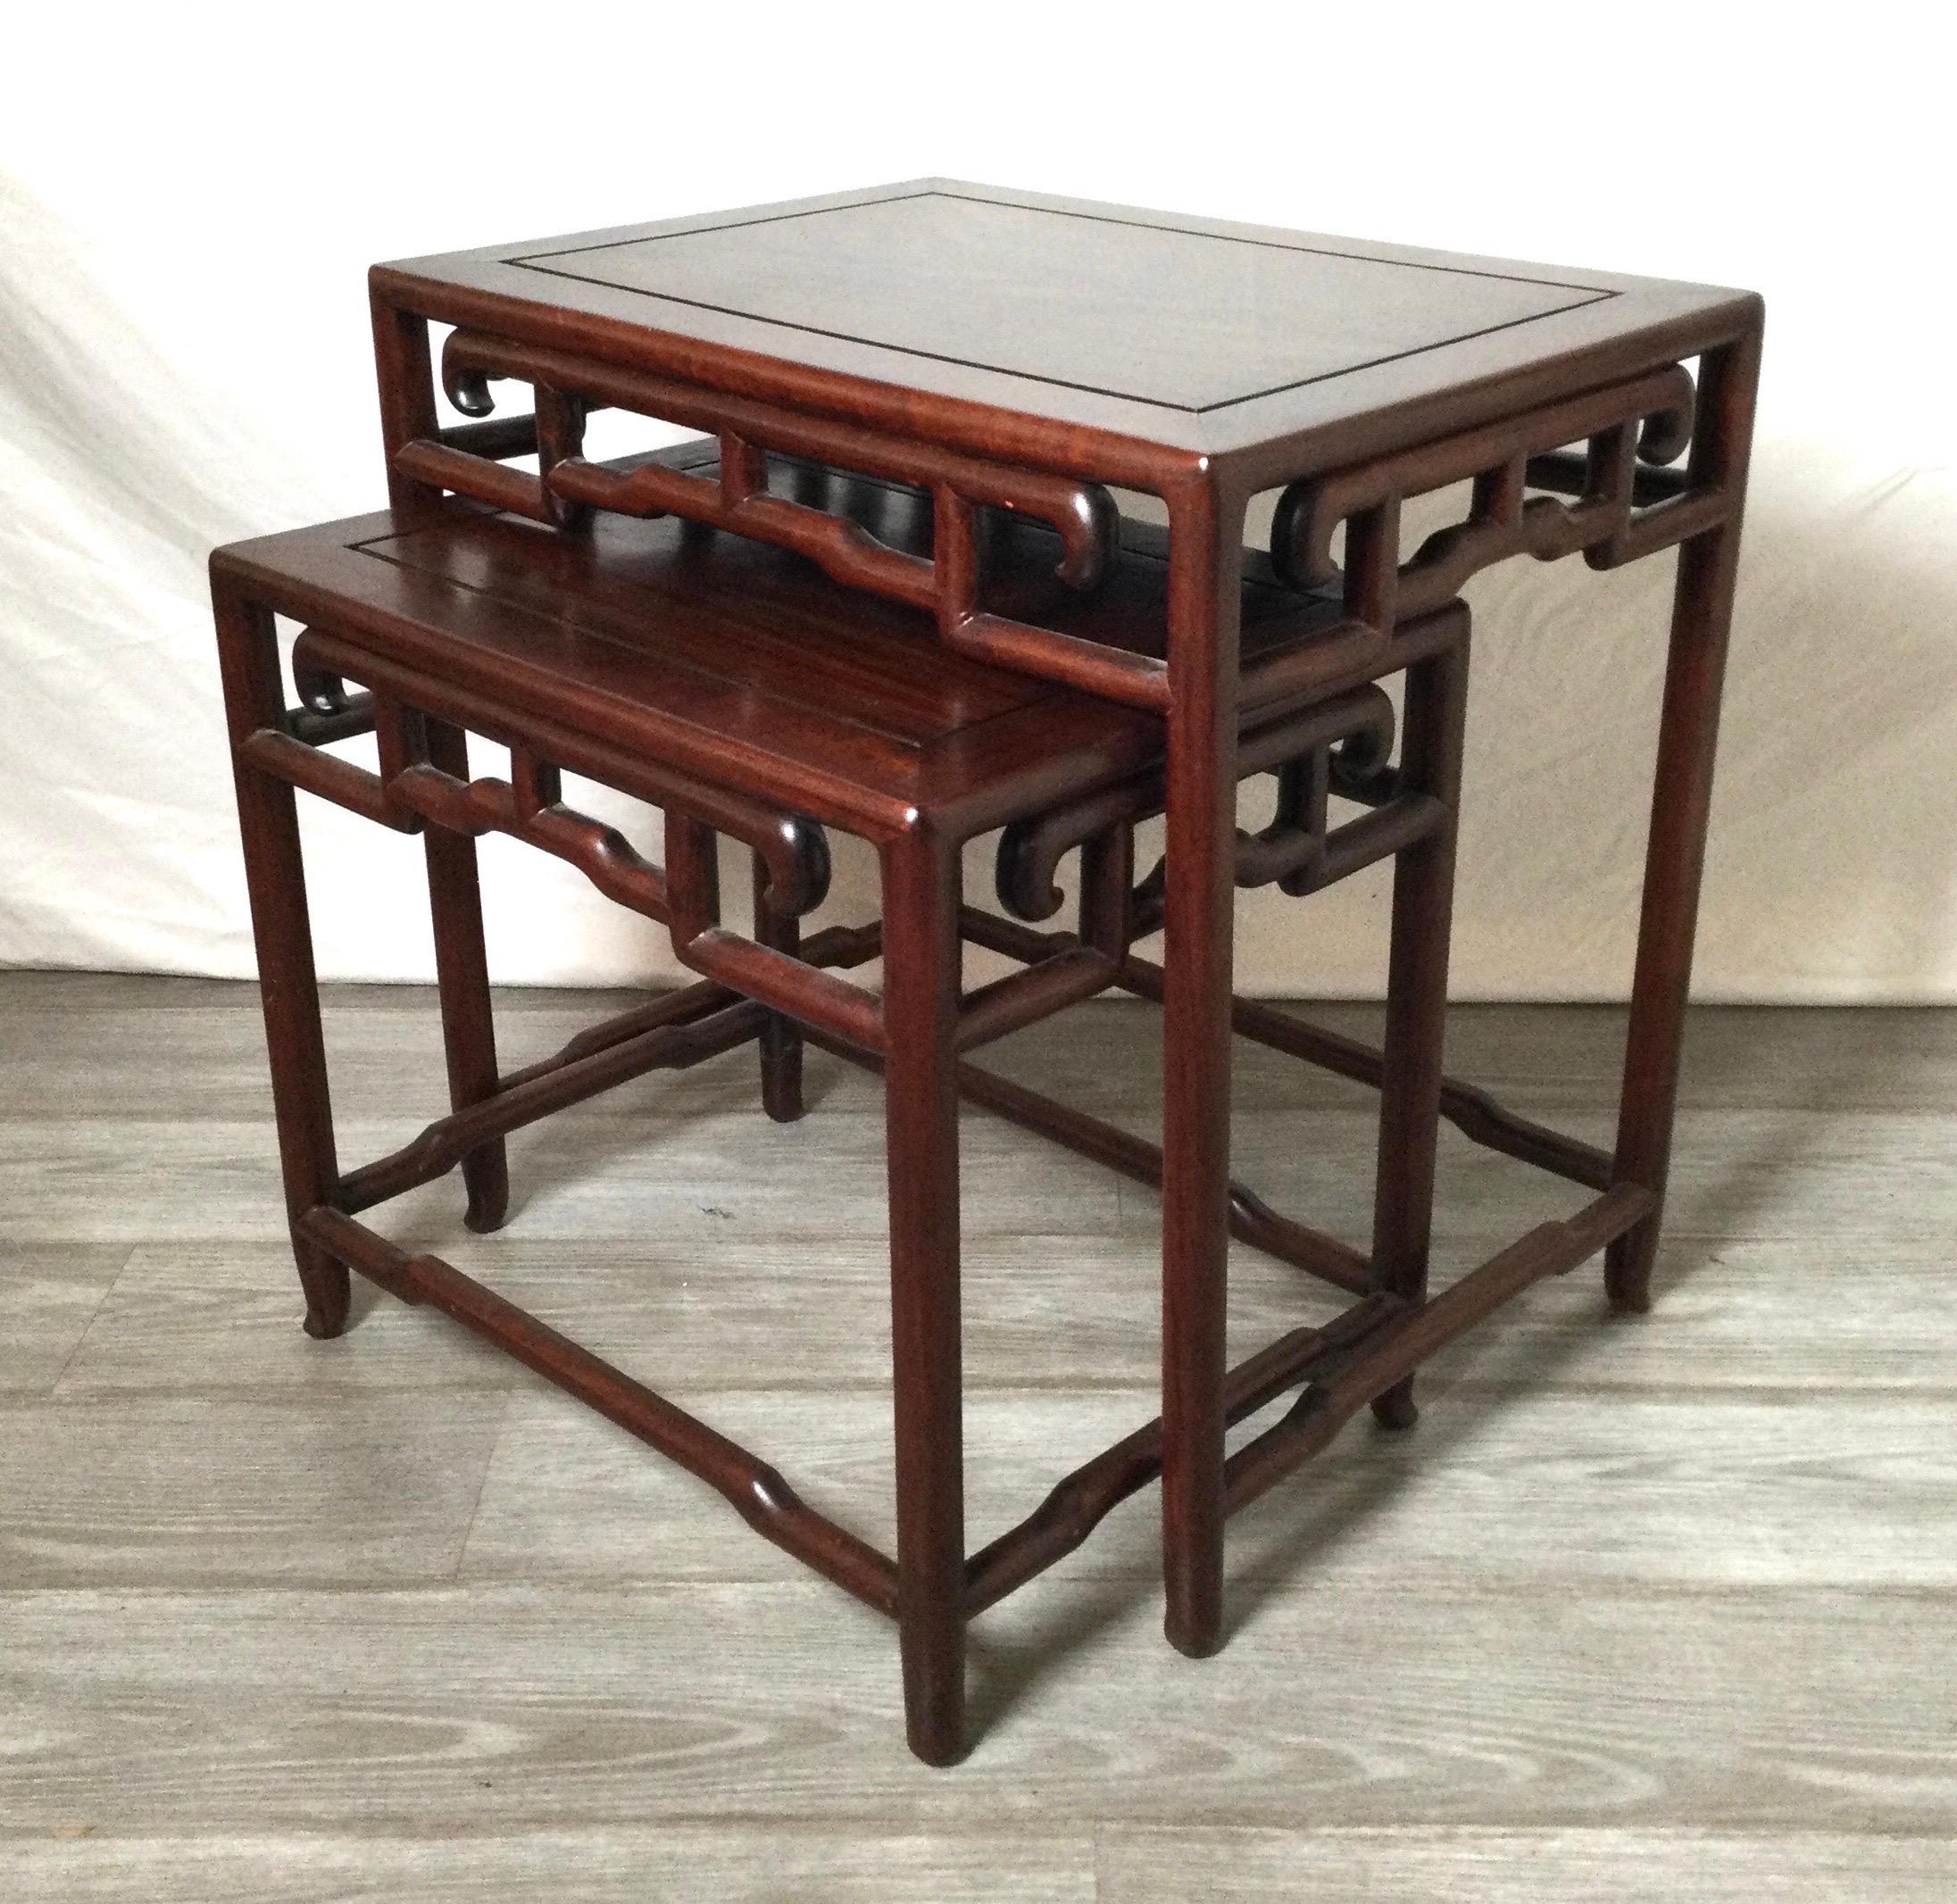 Un ensemble de 2 tables gigognes chinoises anciennes hongmu sculptées à la main. La plus petite s'insère soigneusement dans la table la plus grande pour un accès facile. 22 de large, 22,25 de haut, 16 de profondeur.